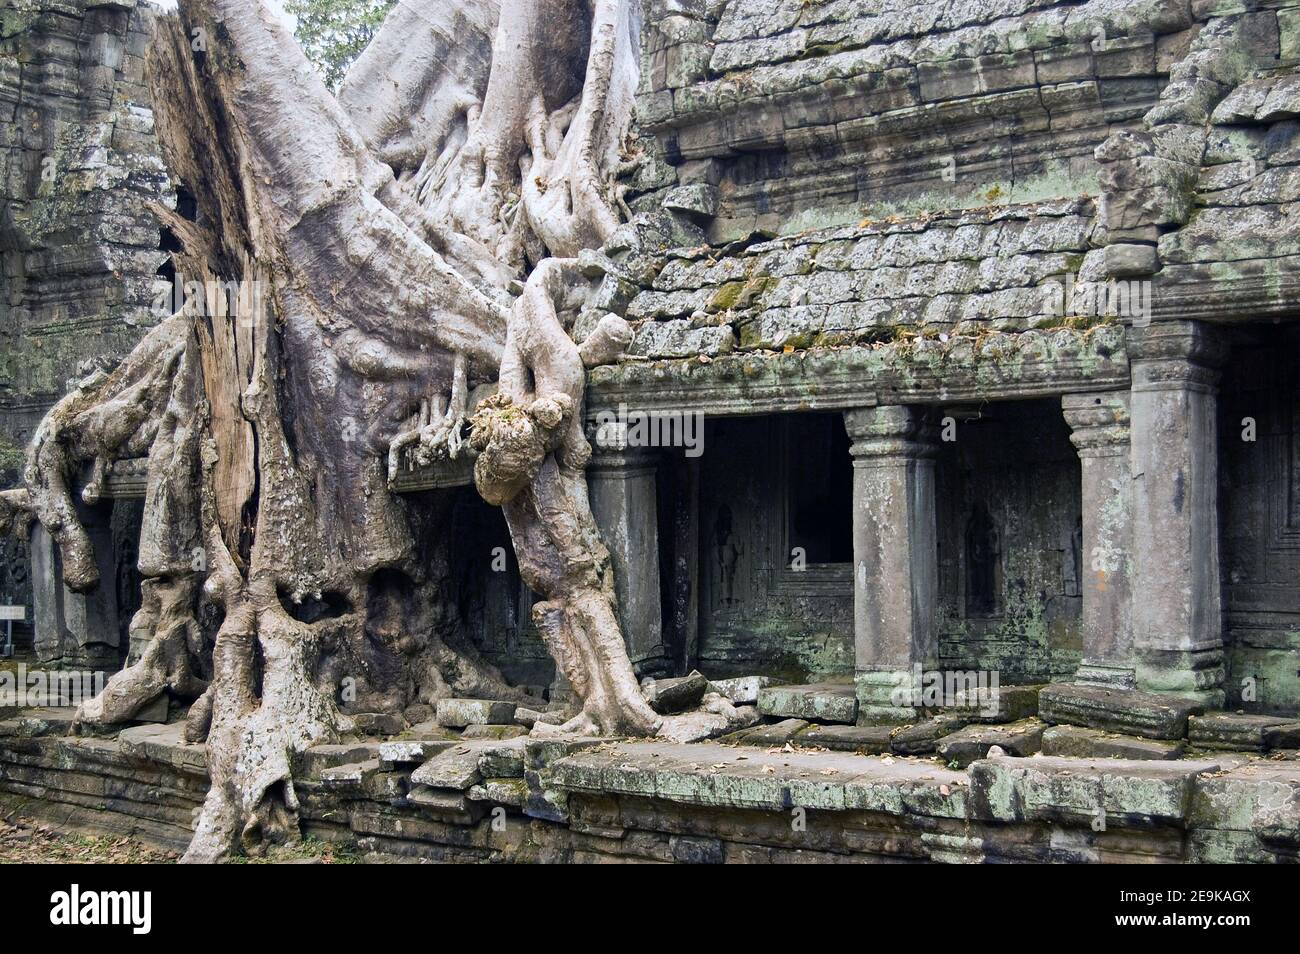 Un grande albero di Kapok, nome latino Ceiba pentandra, che cresce attraverso le antiche rovine Khmer del tempio Preah Khan, Angkor, Cambogia. Struttura antica. Foto Stock